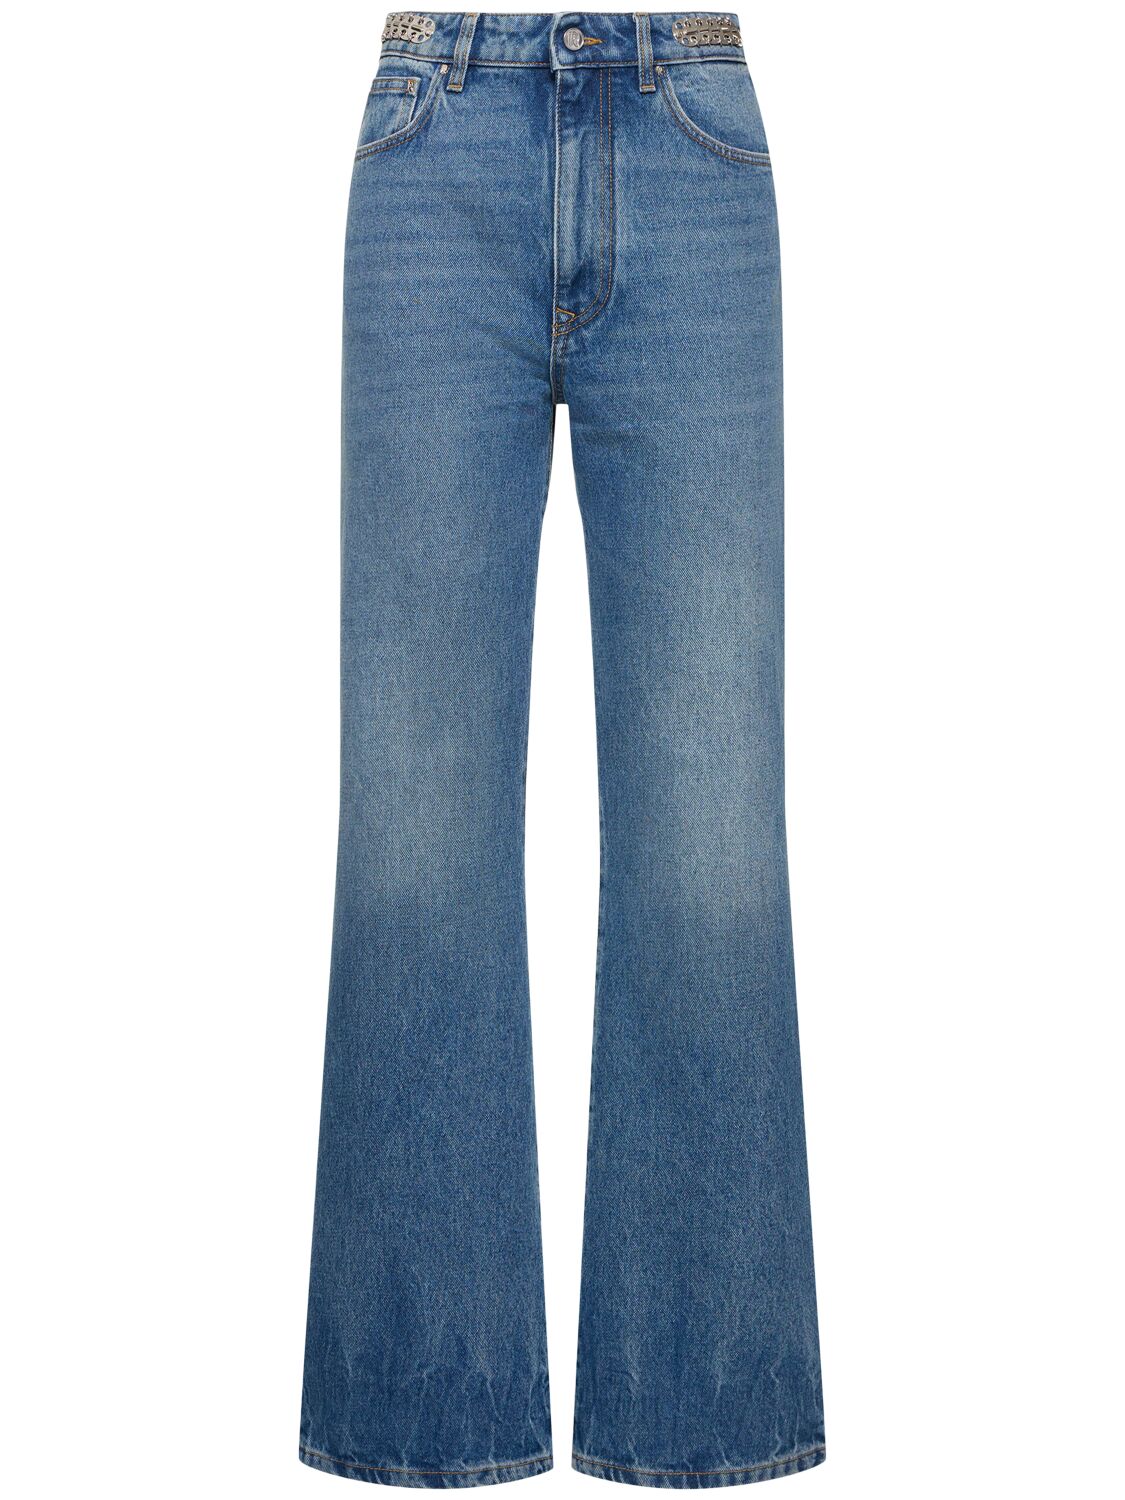 Image of Embellished Denim Flared Jeans